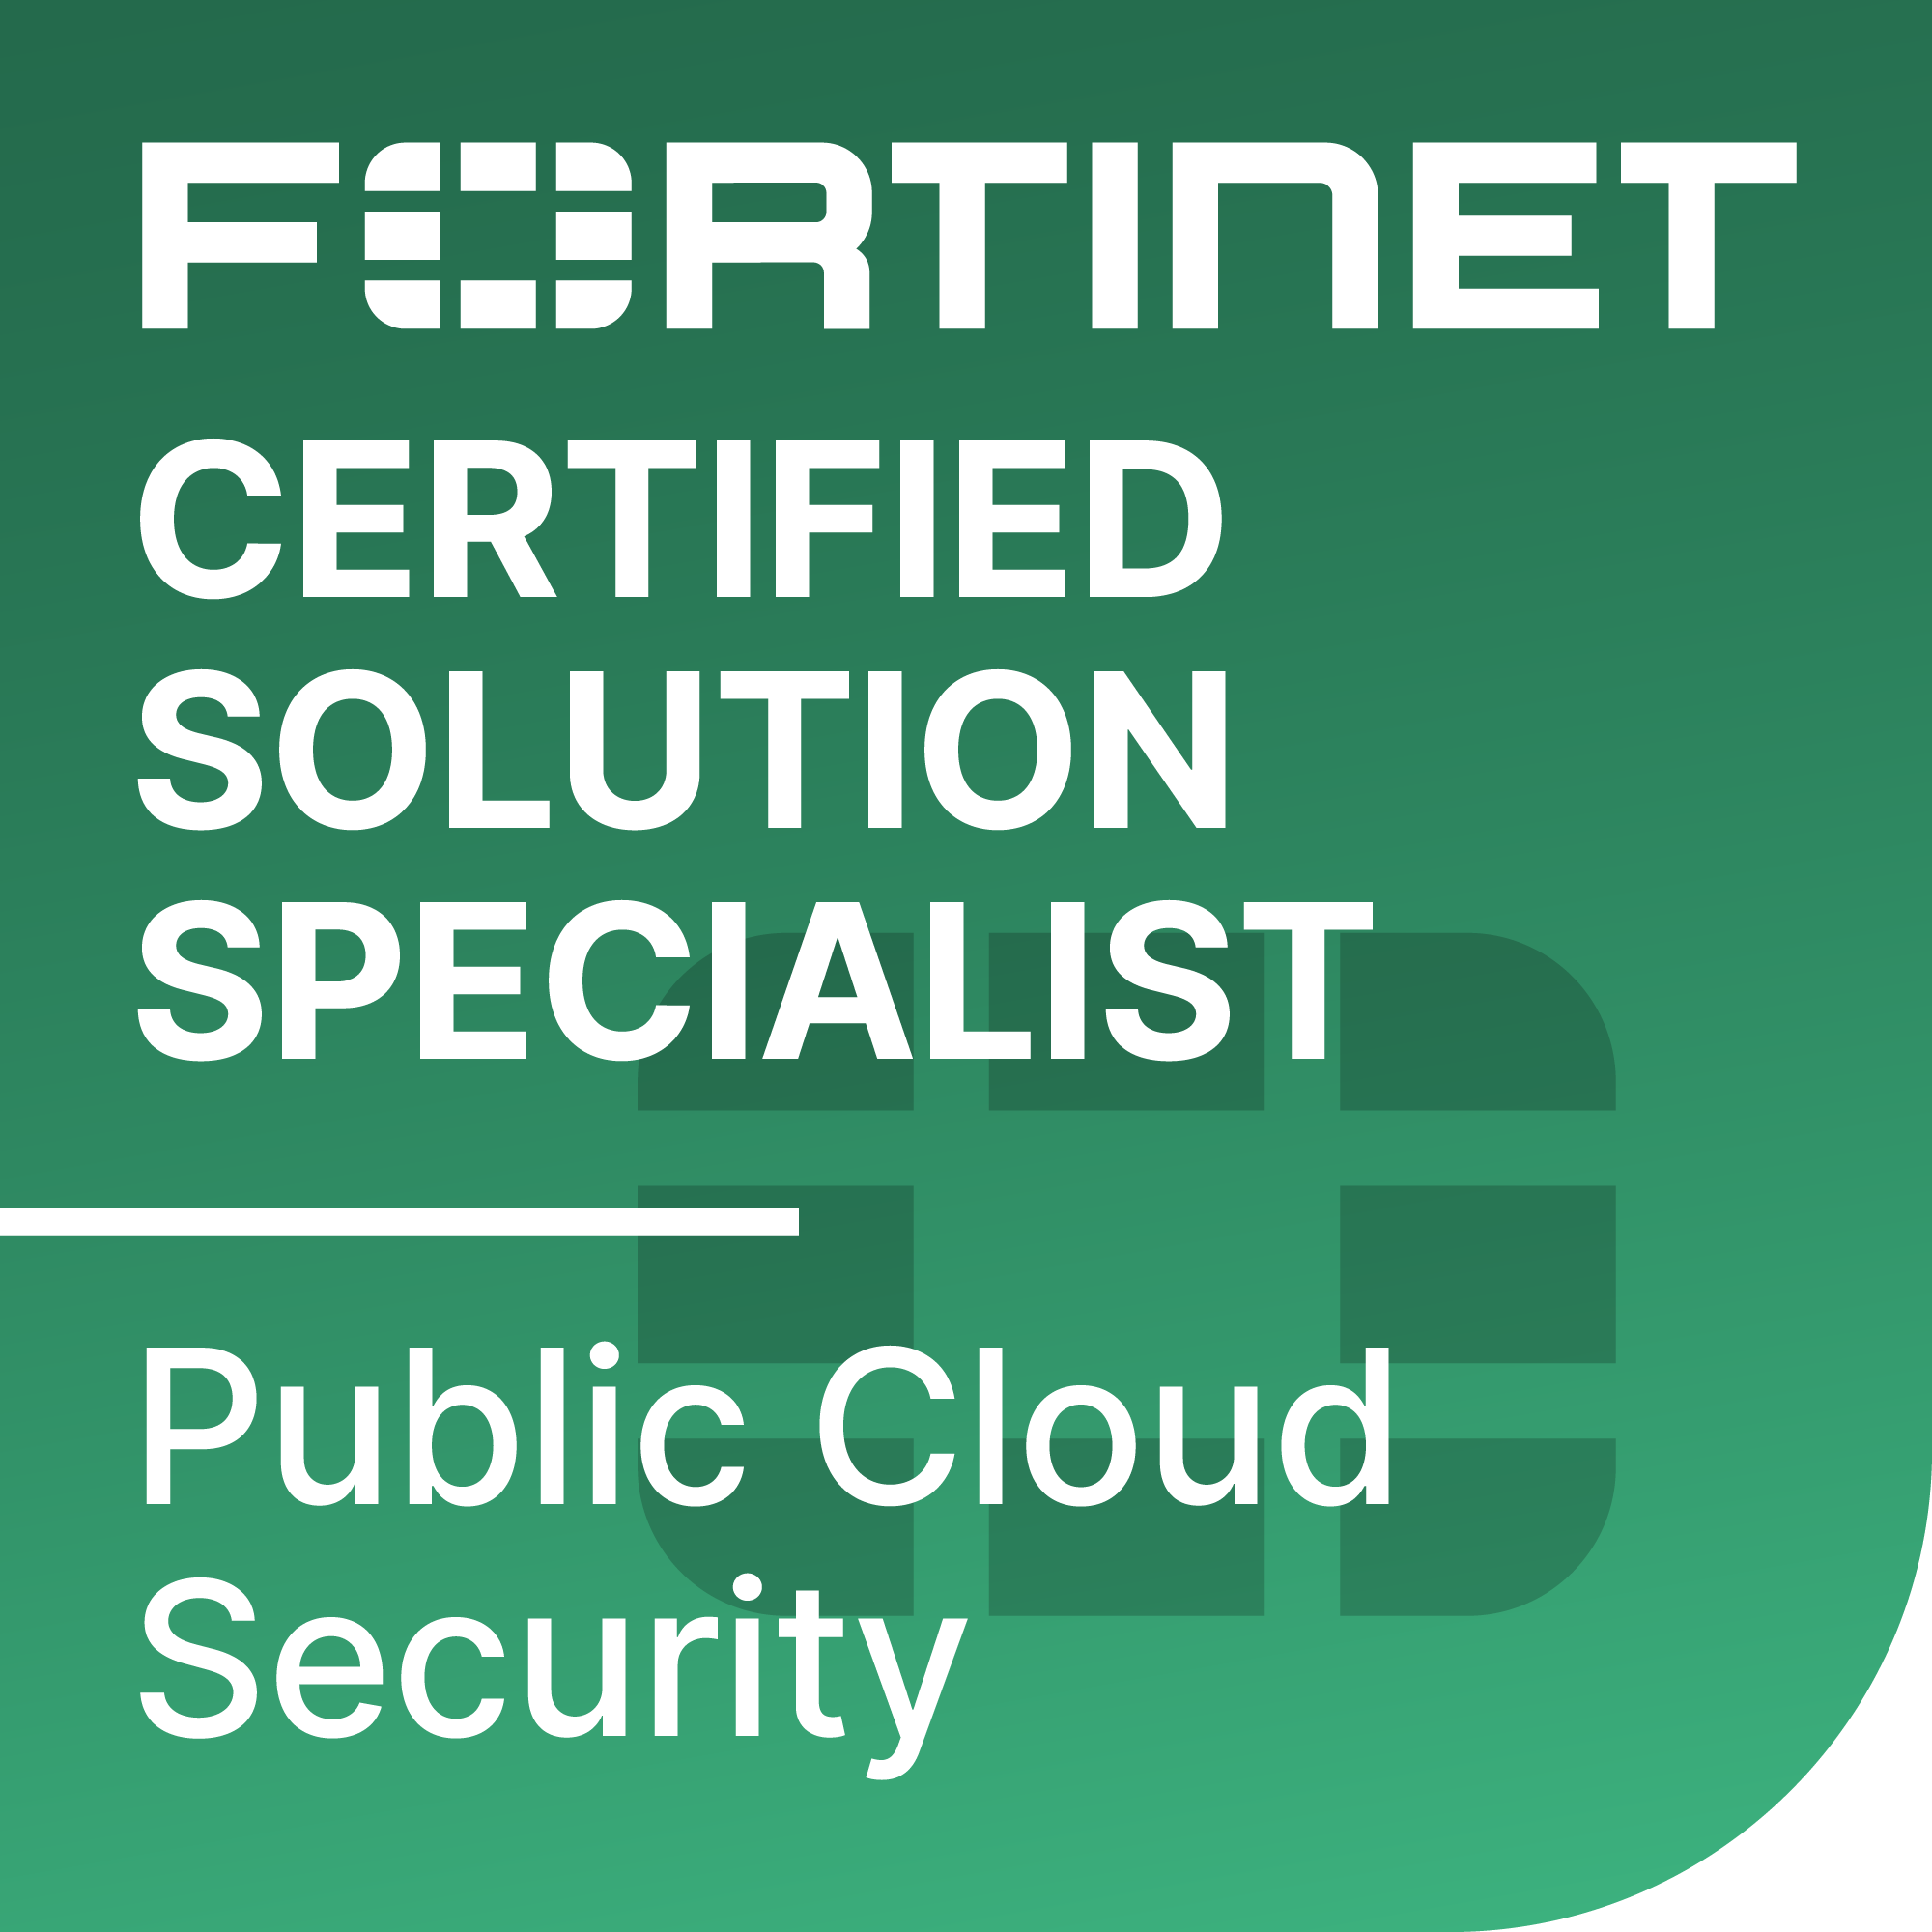 ftnt nse cert sol spec cloud security